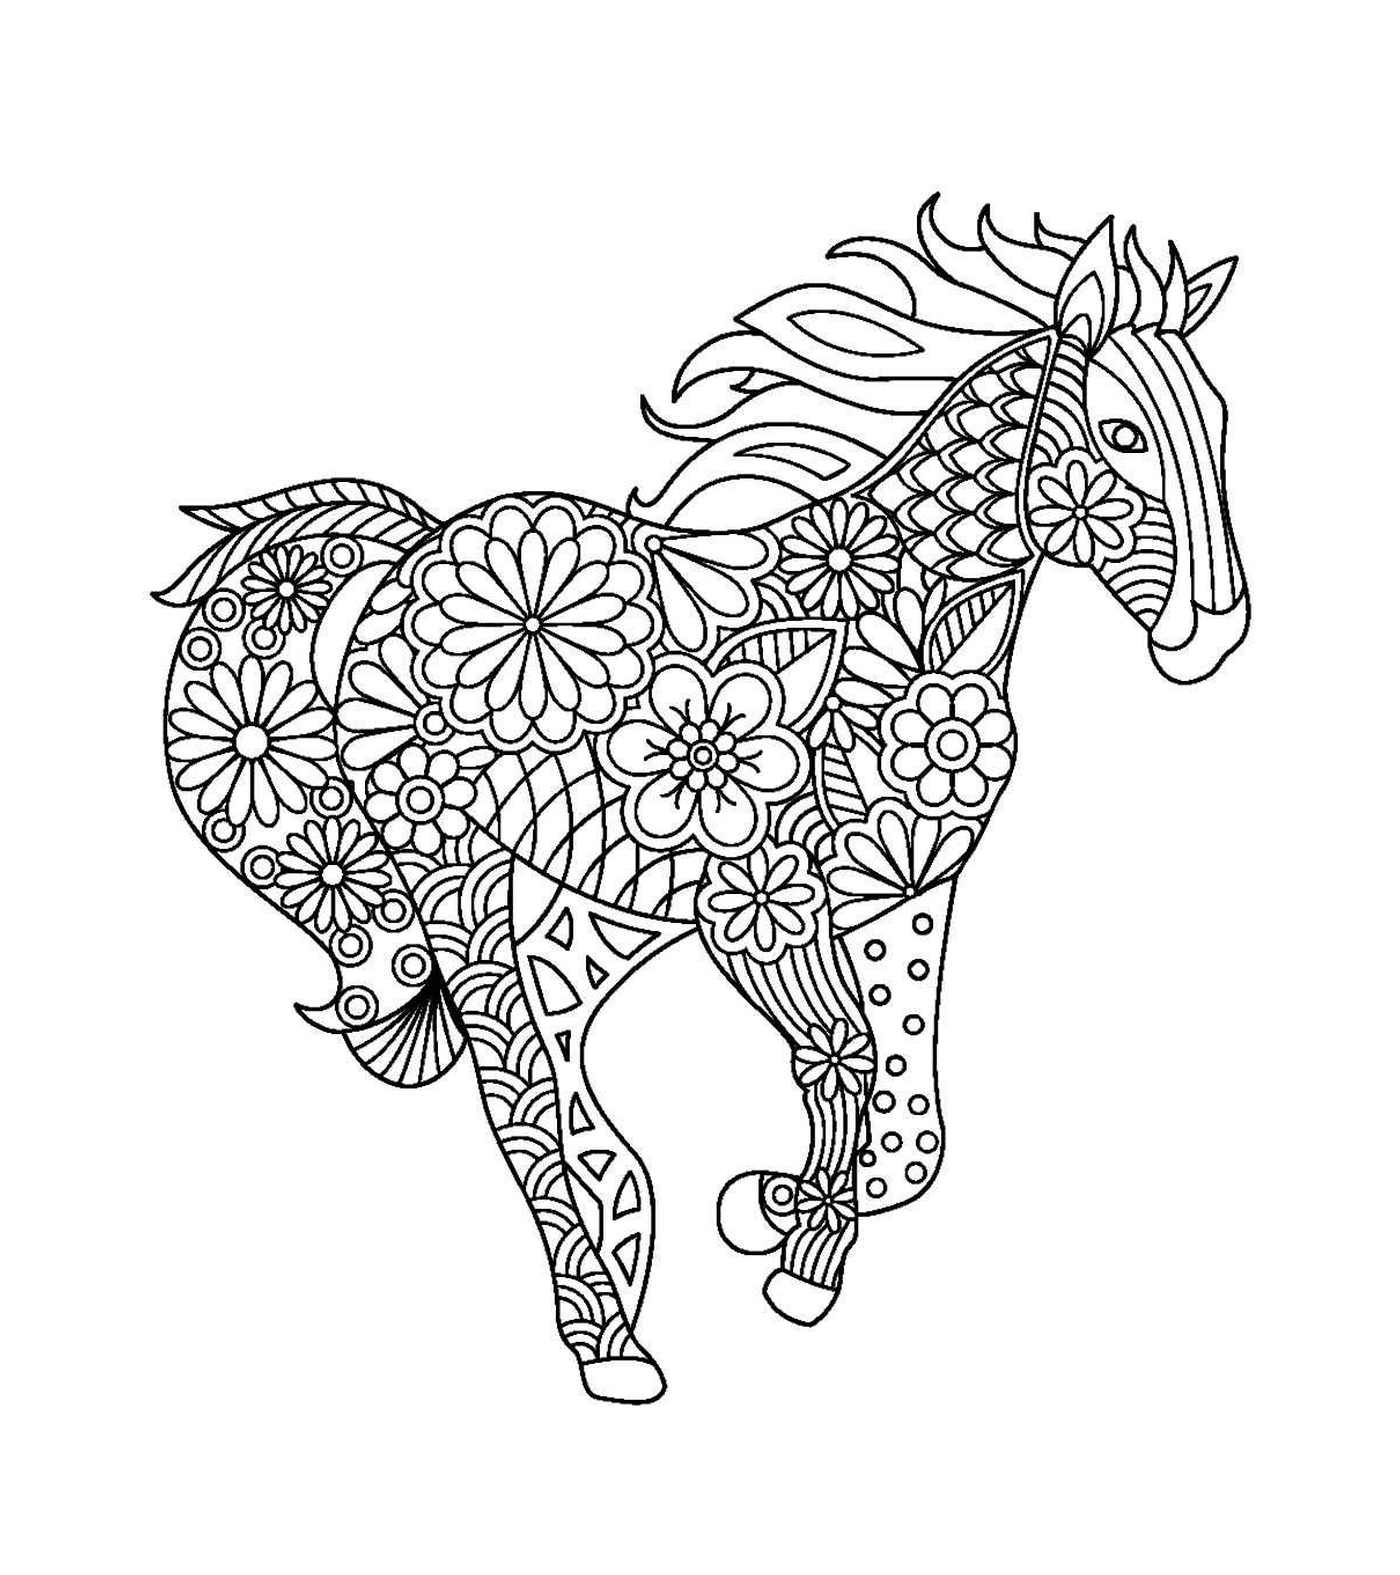  Un adulto di un cavallo con disegni floreali 